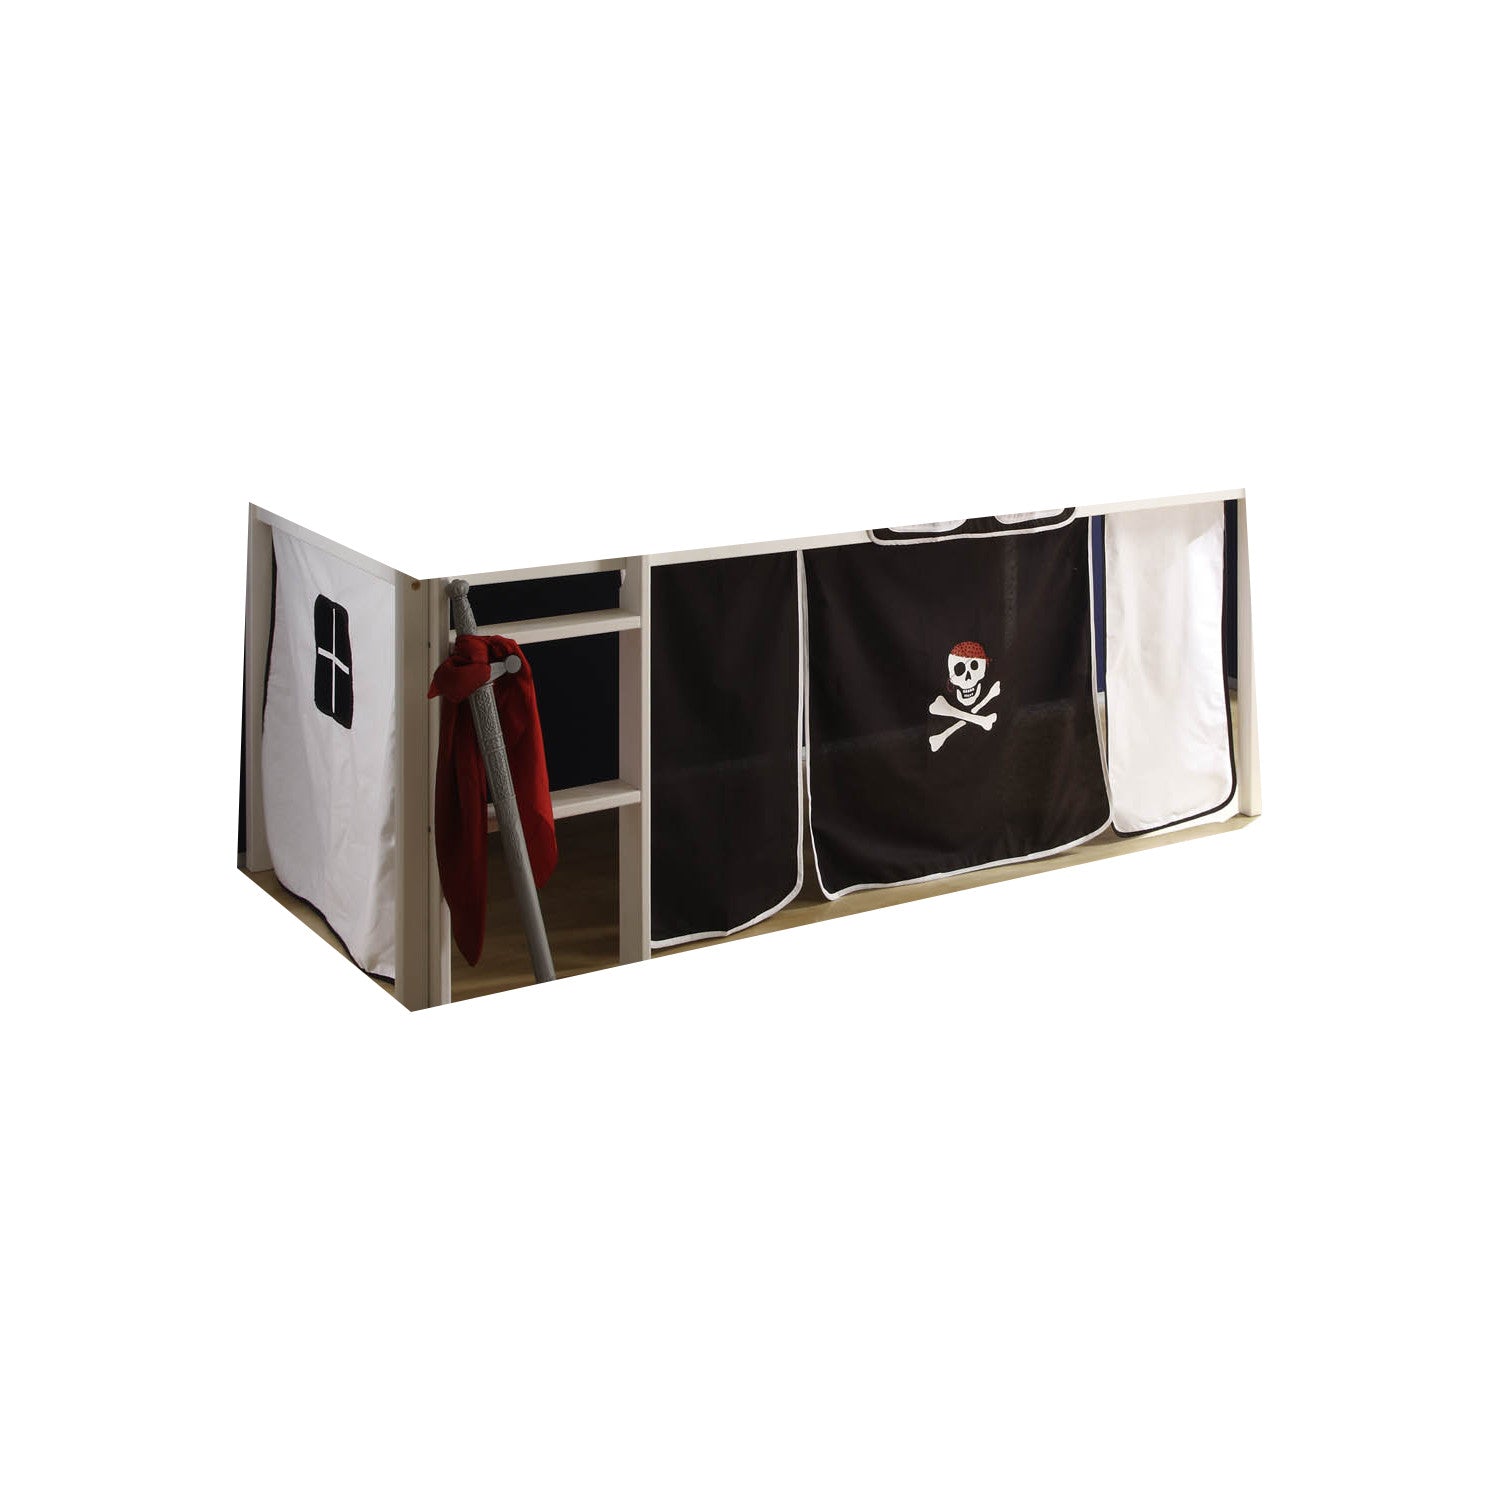 Vorhang Pirat 4-tlg 100% Baumwolle schwarz weiß inklusive Befestigung (2x Klettband) waschbar 30°